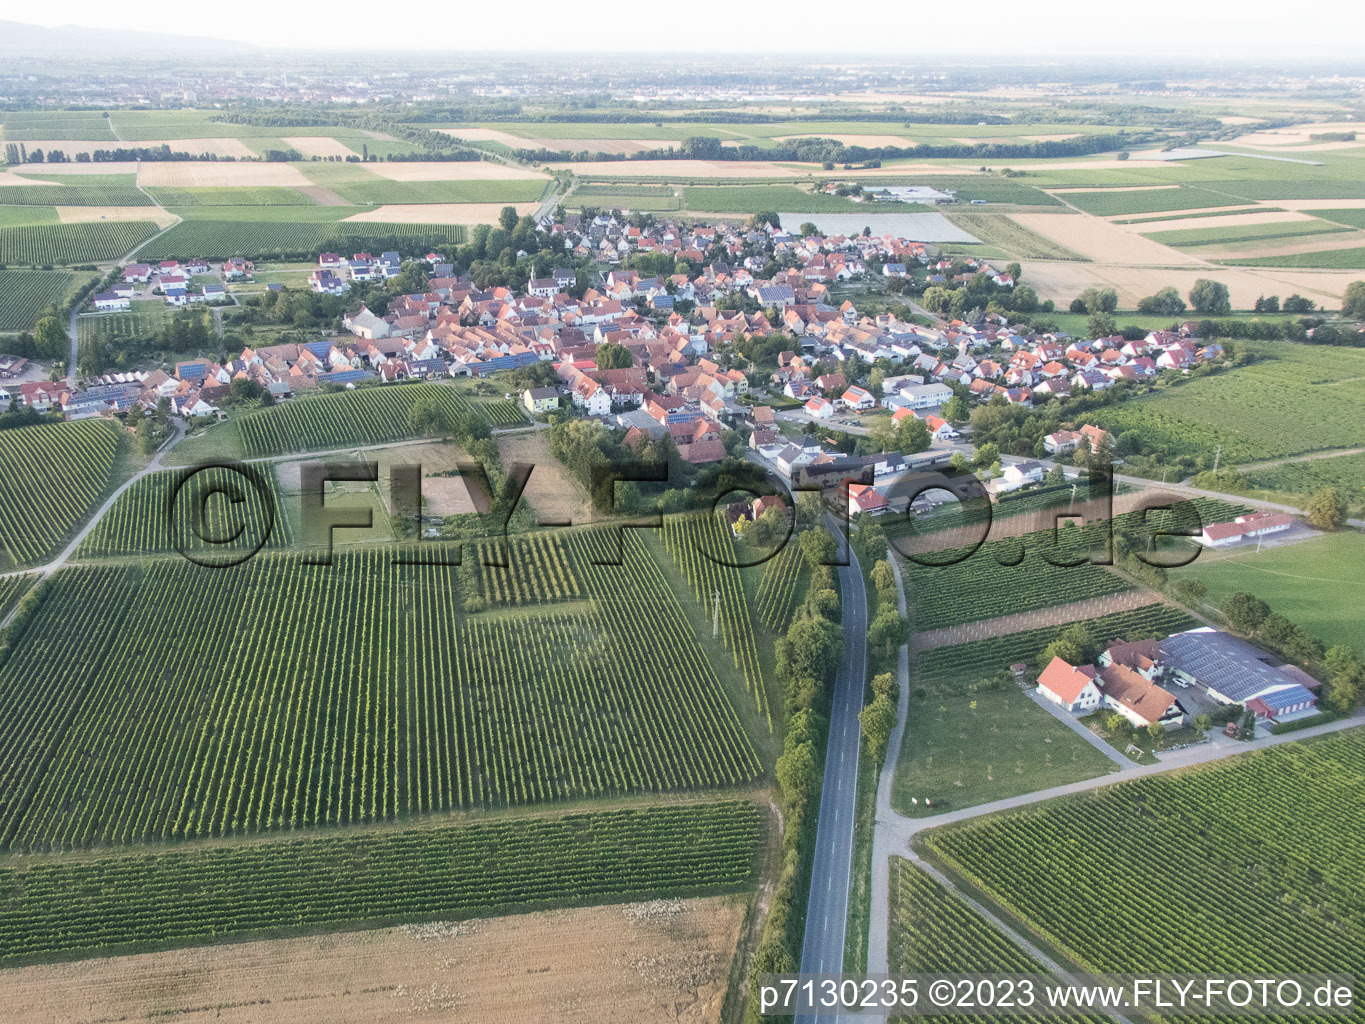 Vue aérienne de Impflingen dans le département Rhénanie-Palatinat, Allemagne